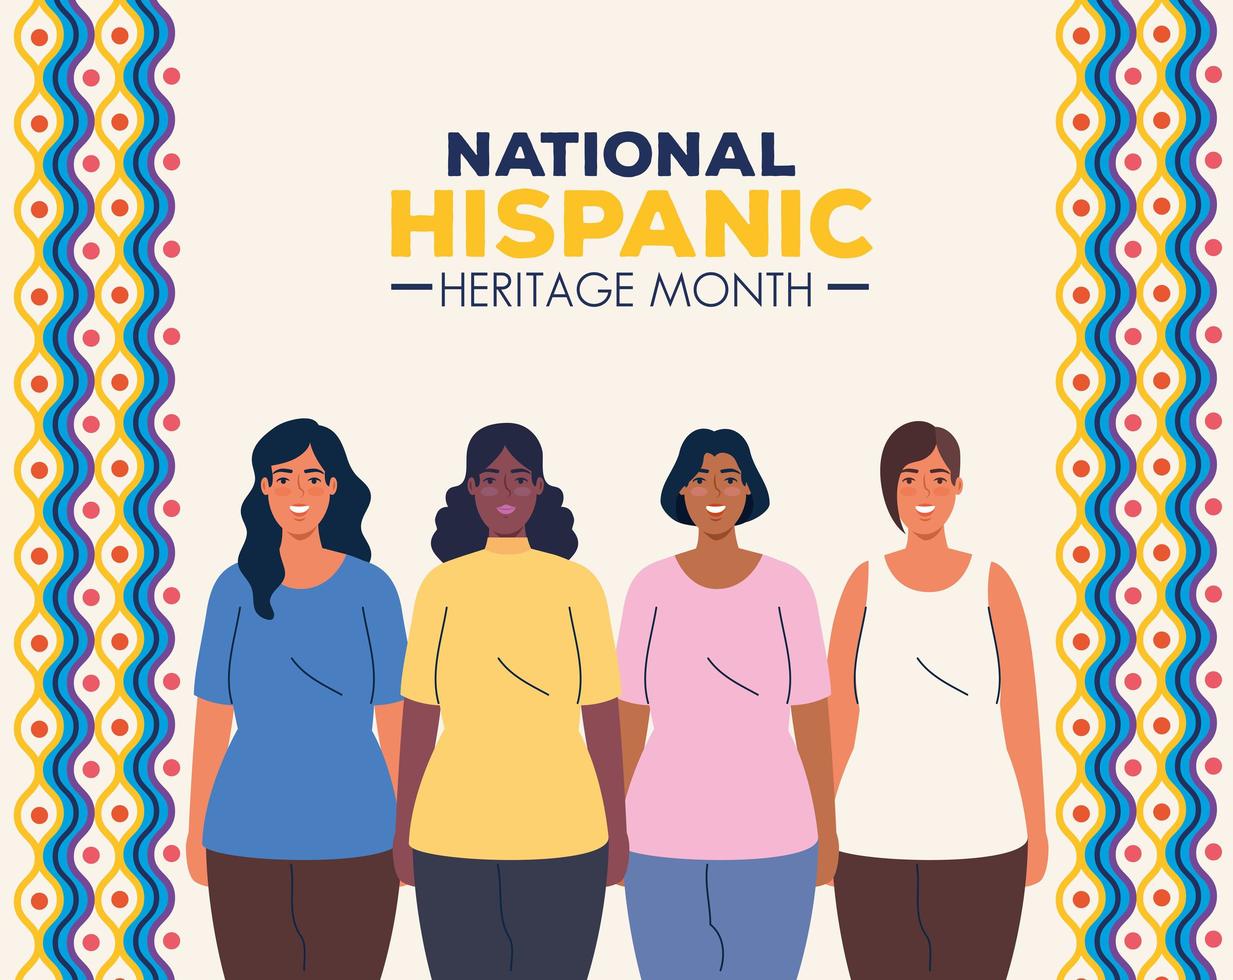 mês da herança hispânica nacional e grupo multiétnico de mulheres juntos vetor